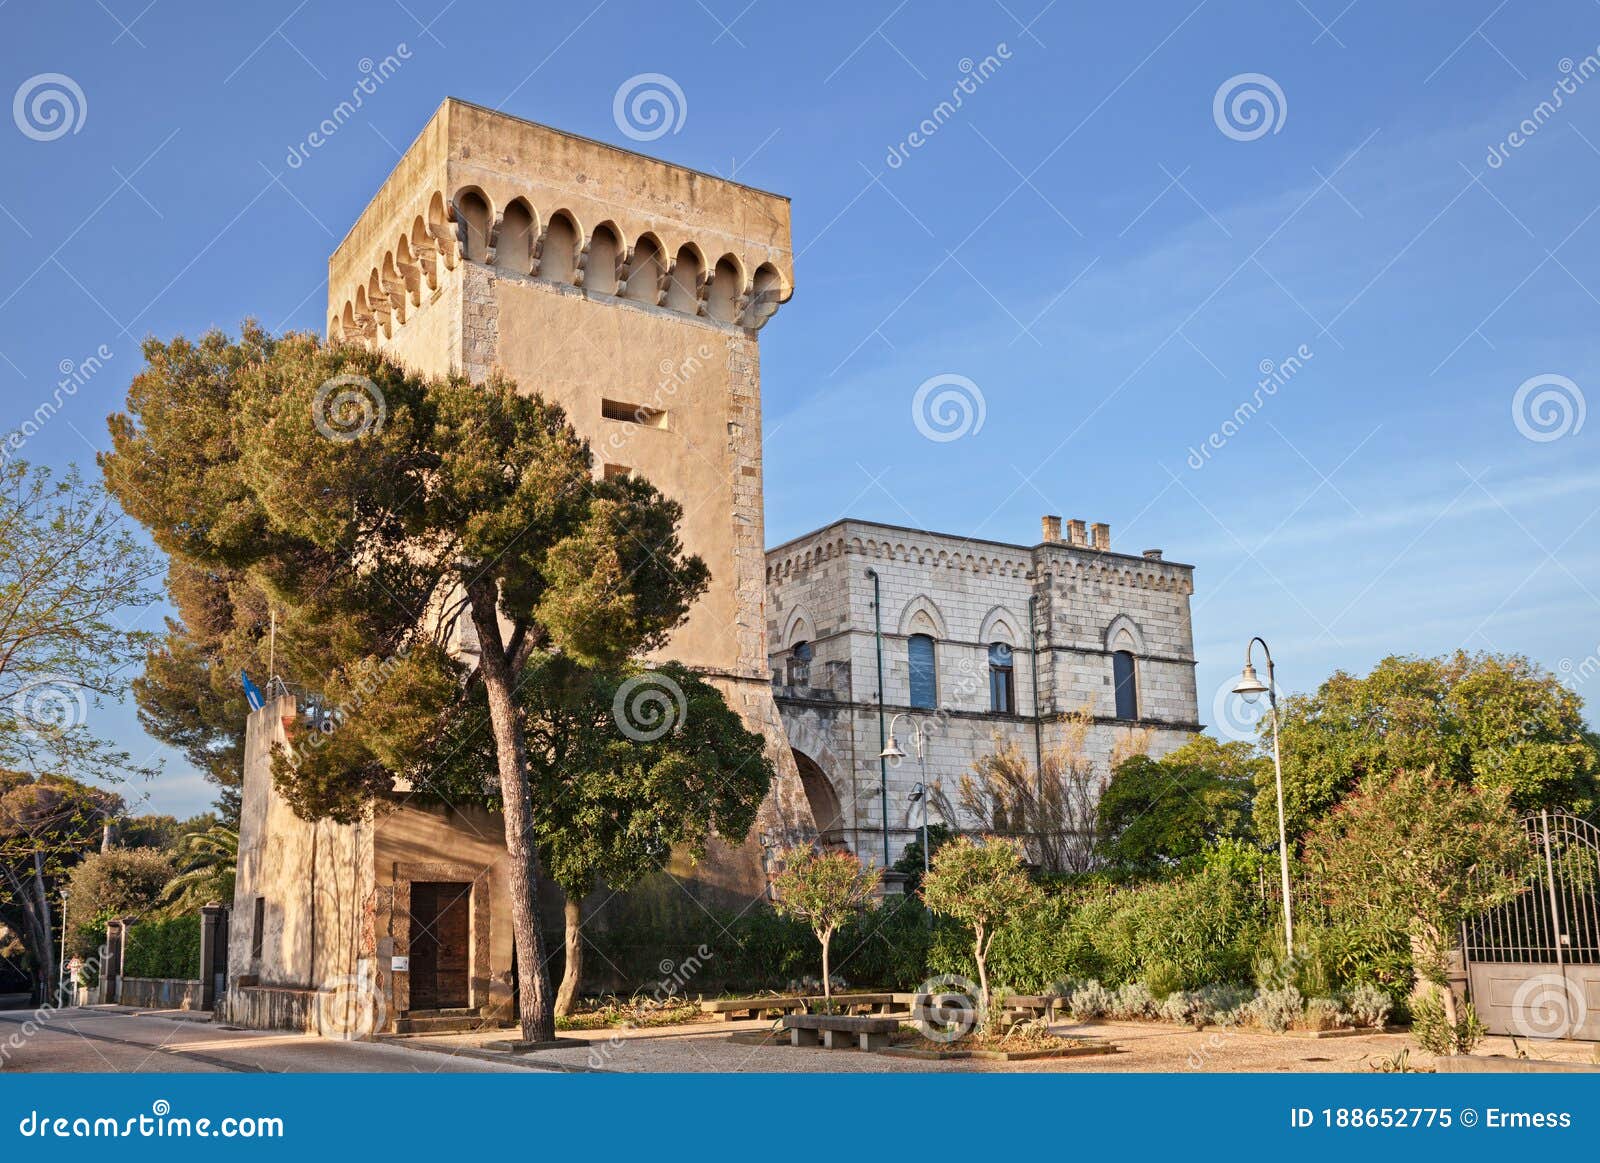 castiglioncello, rosignano marittimo, livorno, tuscany, italy: the ancient tower of 17th century